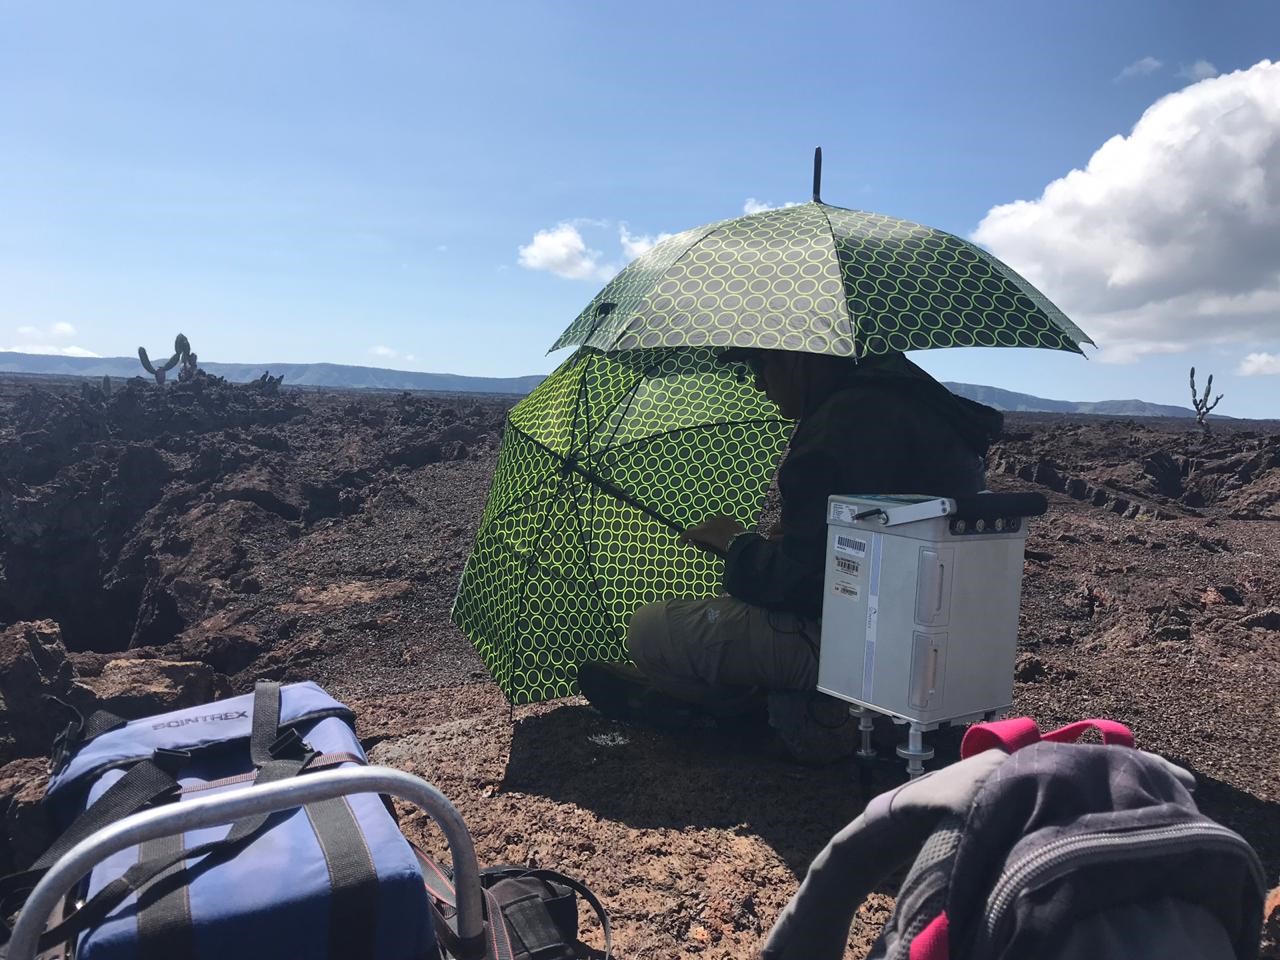 Trabajos de Monitoreo en la caldera del Volcán Sierra Negra (Galápagos)